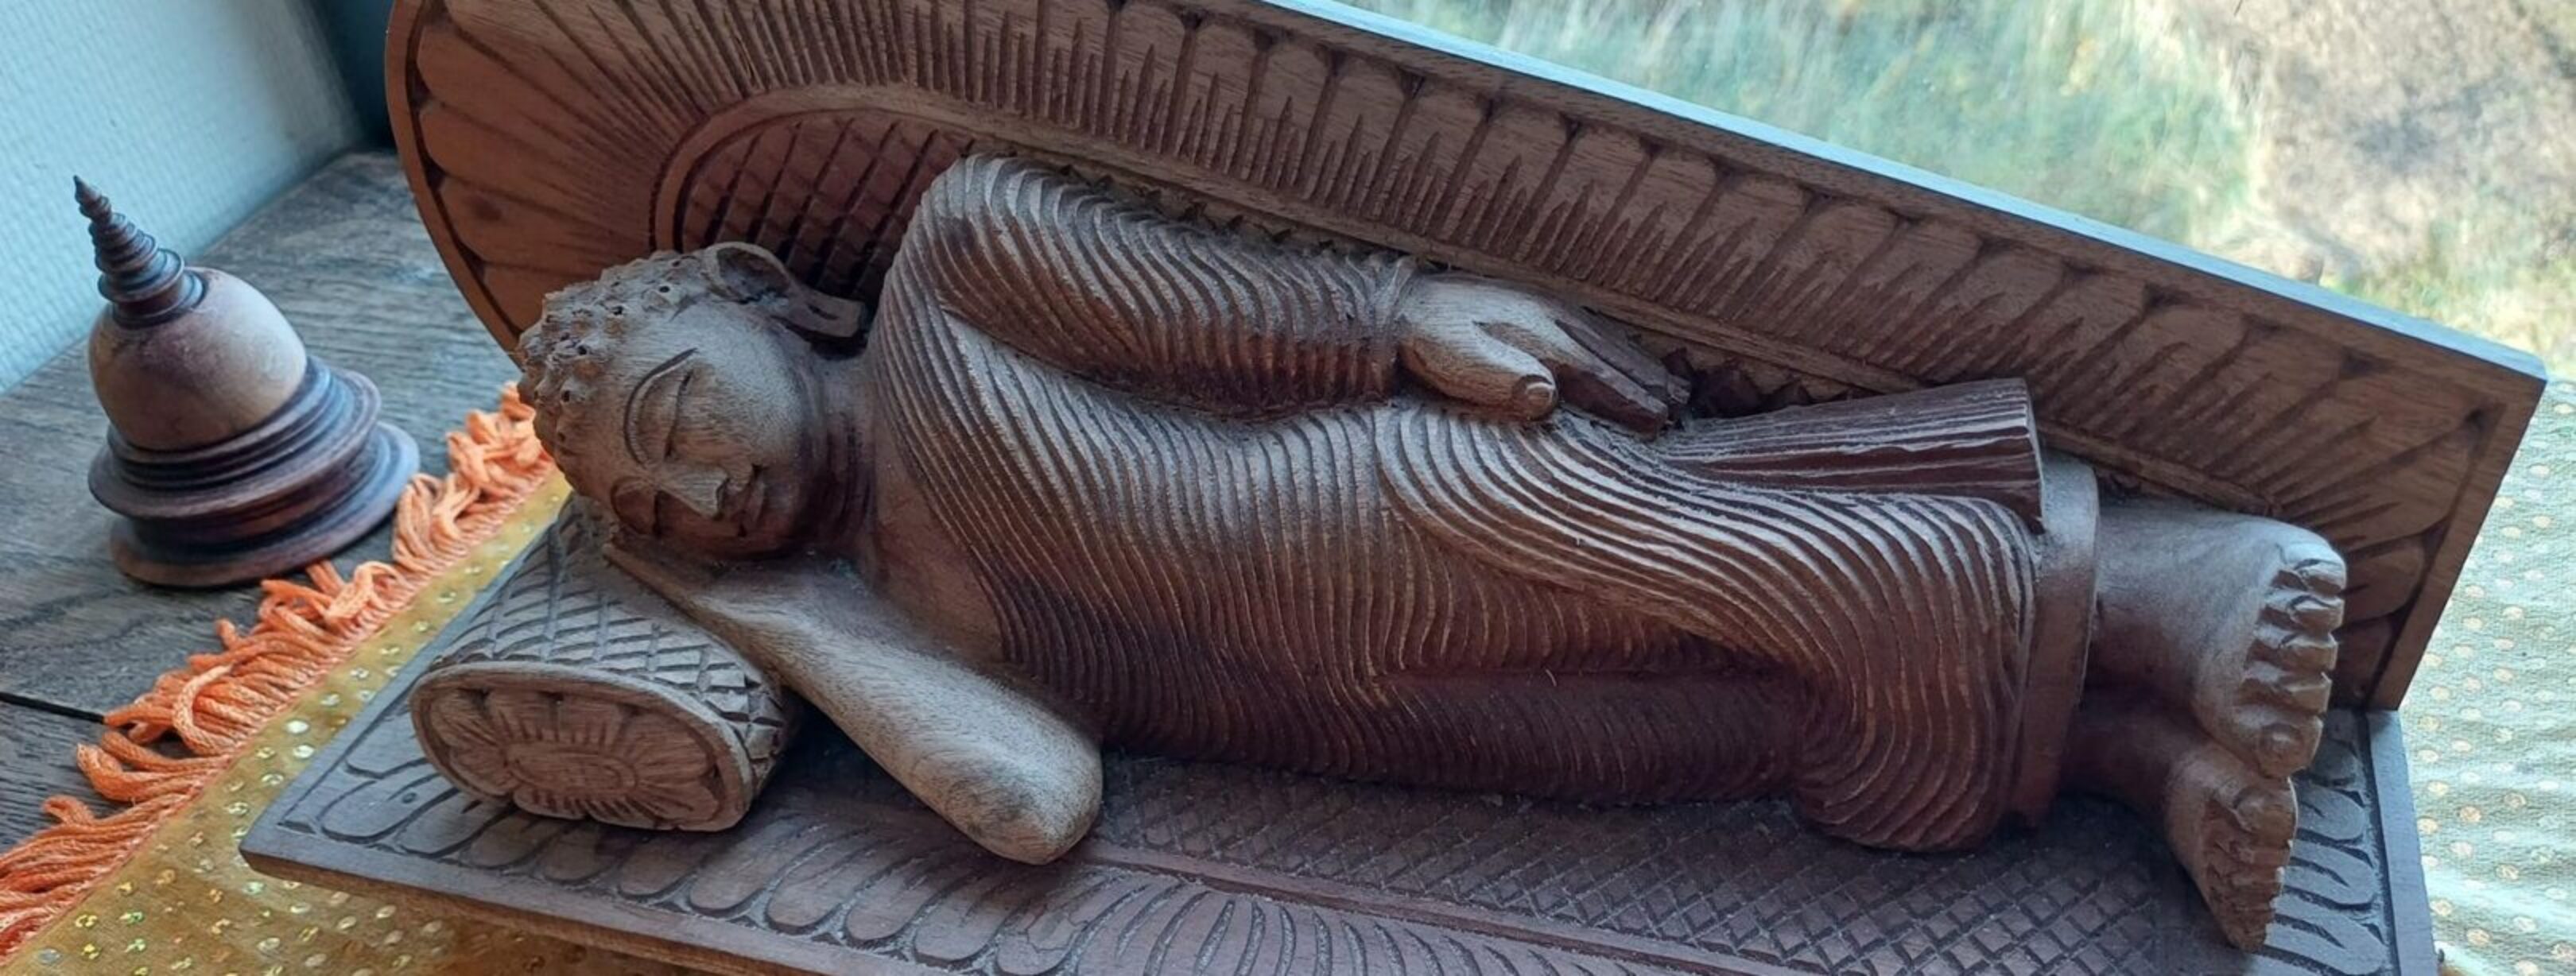 1620-De Boedda op zijn sterfbed in de leeuwenhouding ( op de rechterzij met de rechterhand onder het hoofd en de linkerhand op de linker heup